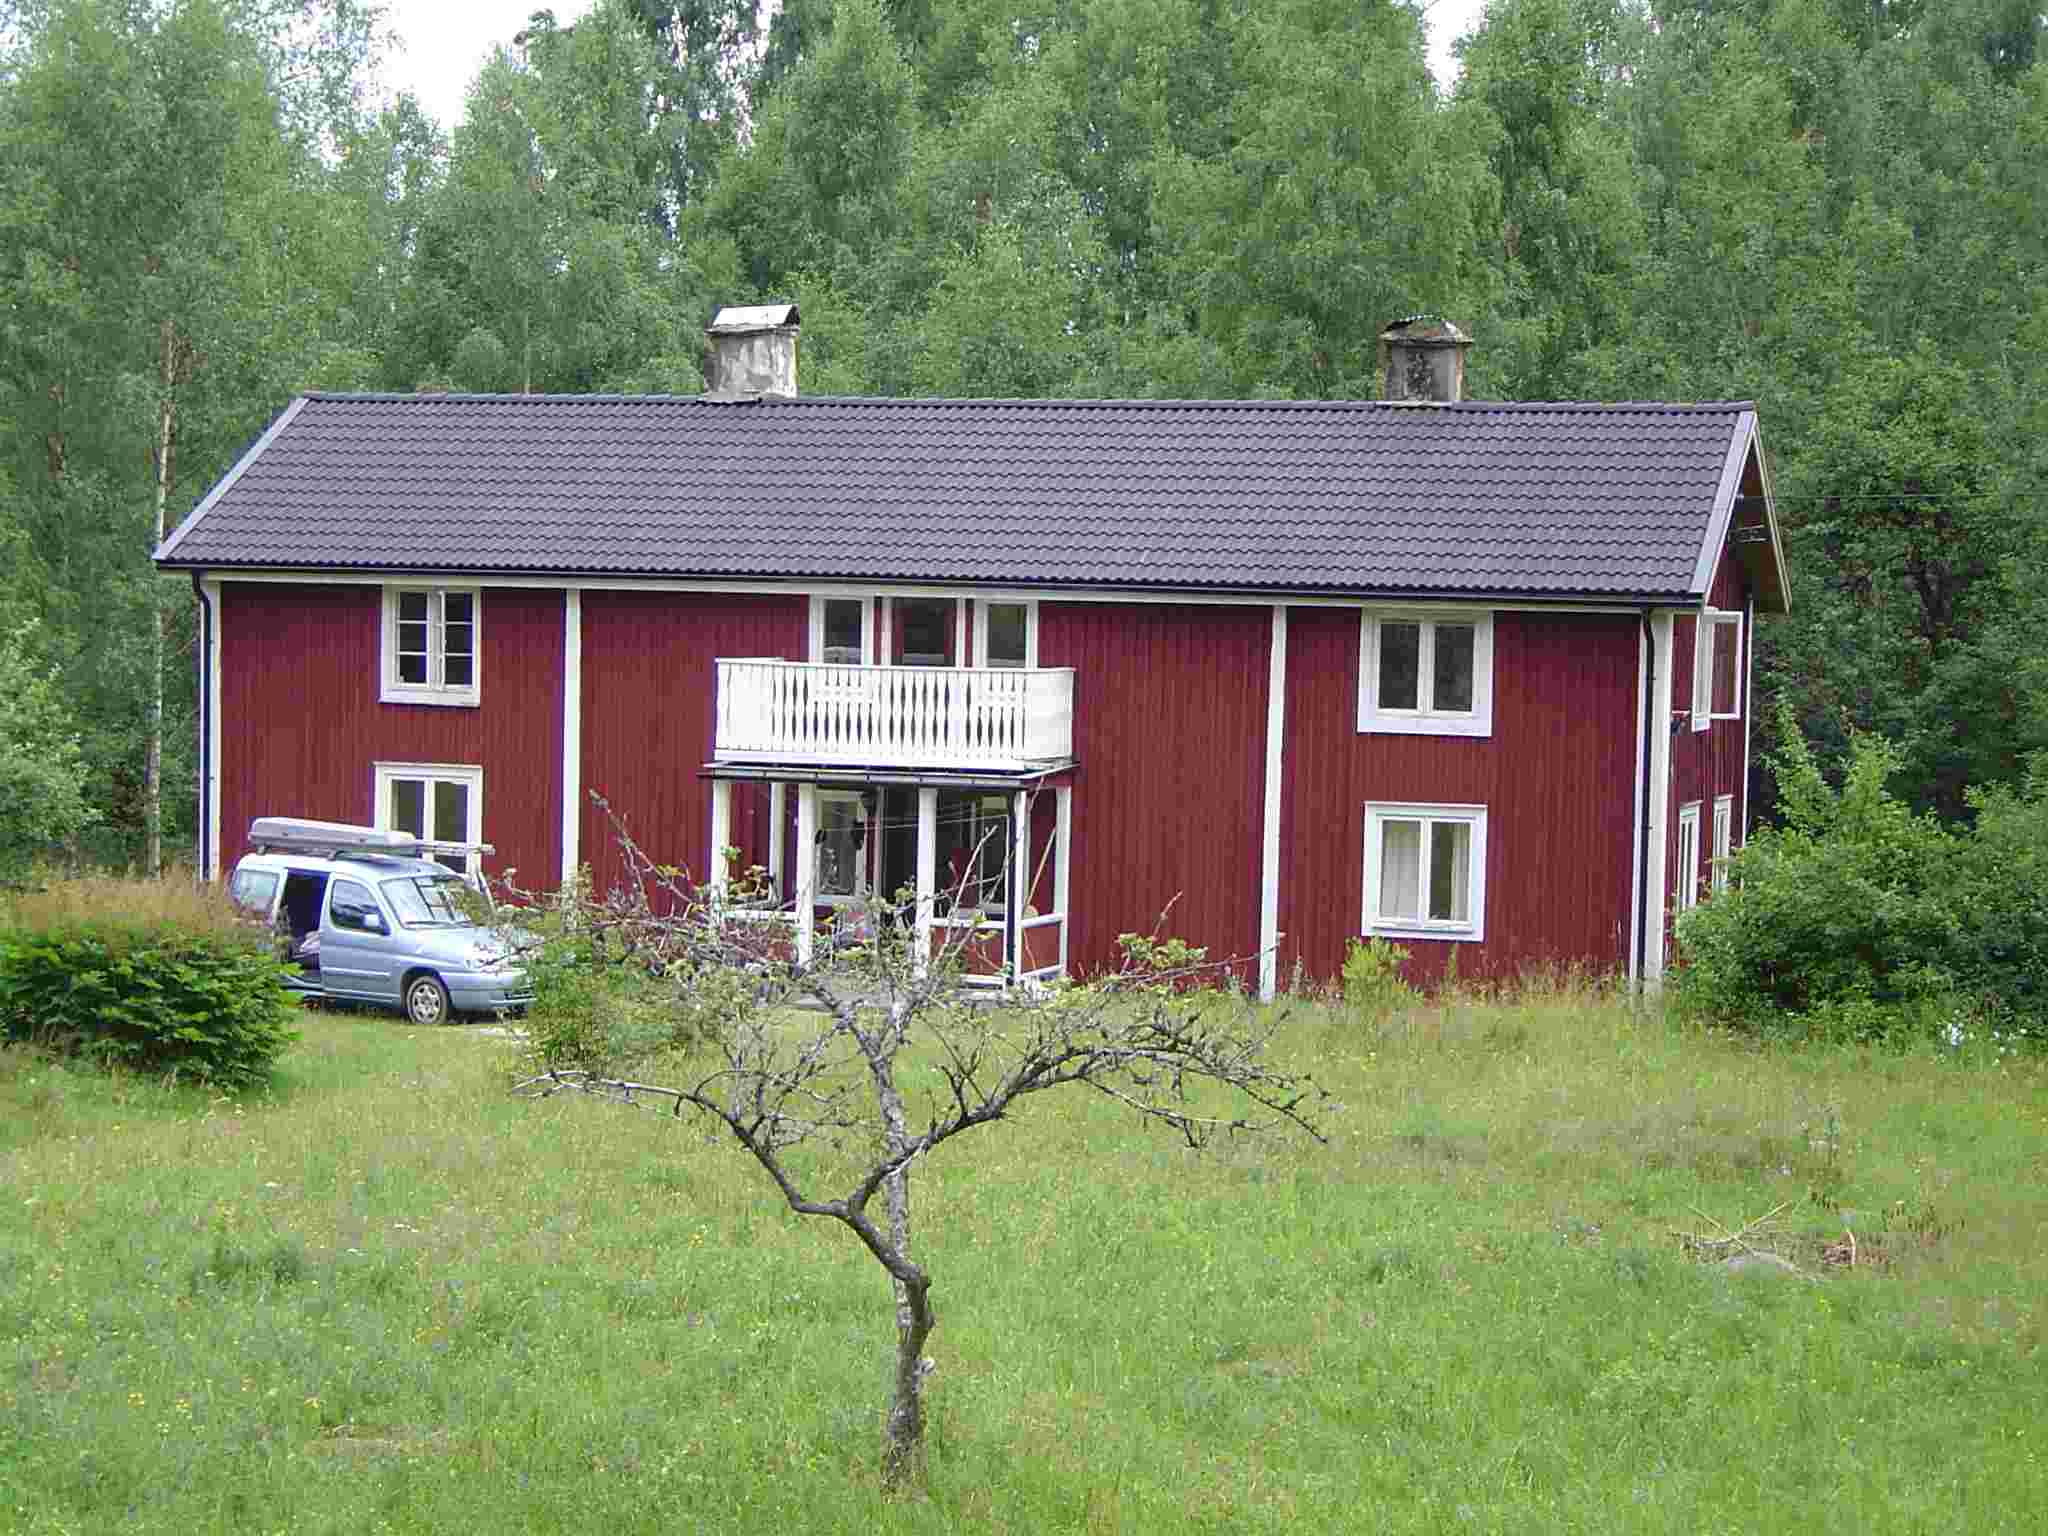 Rusland aluminium Sygdom Skøn Ødegaard i Sverige, Ødegårdsferie leje af ødegård ferienhaus vermietung